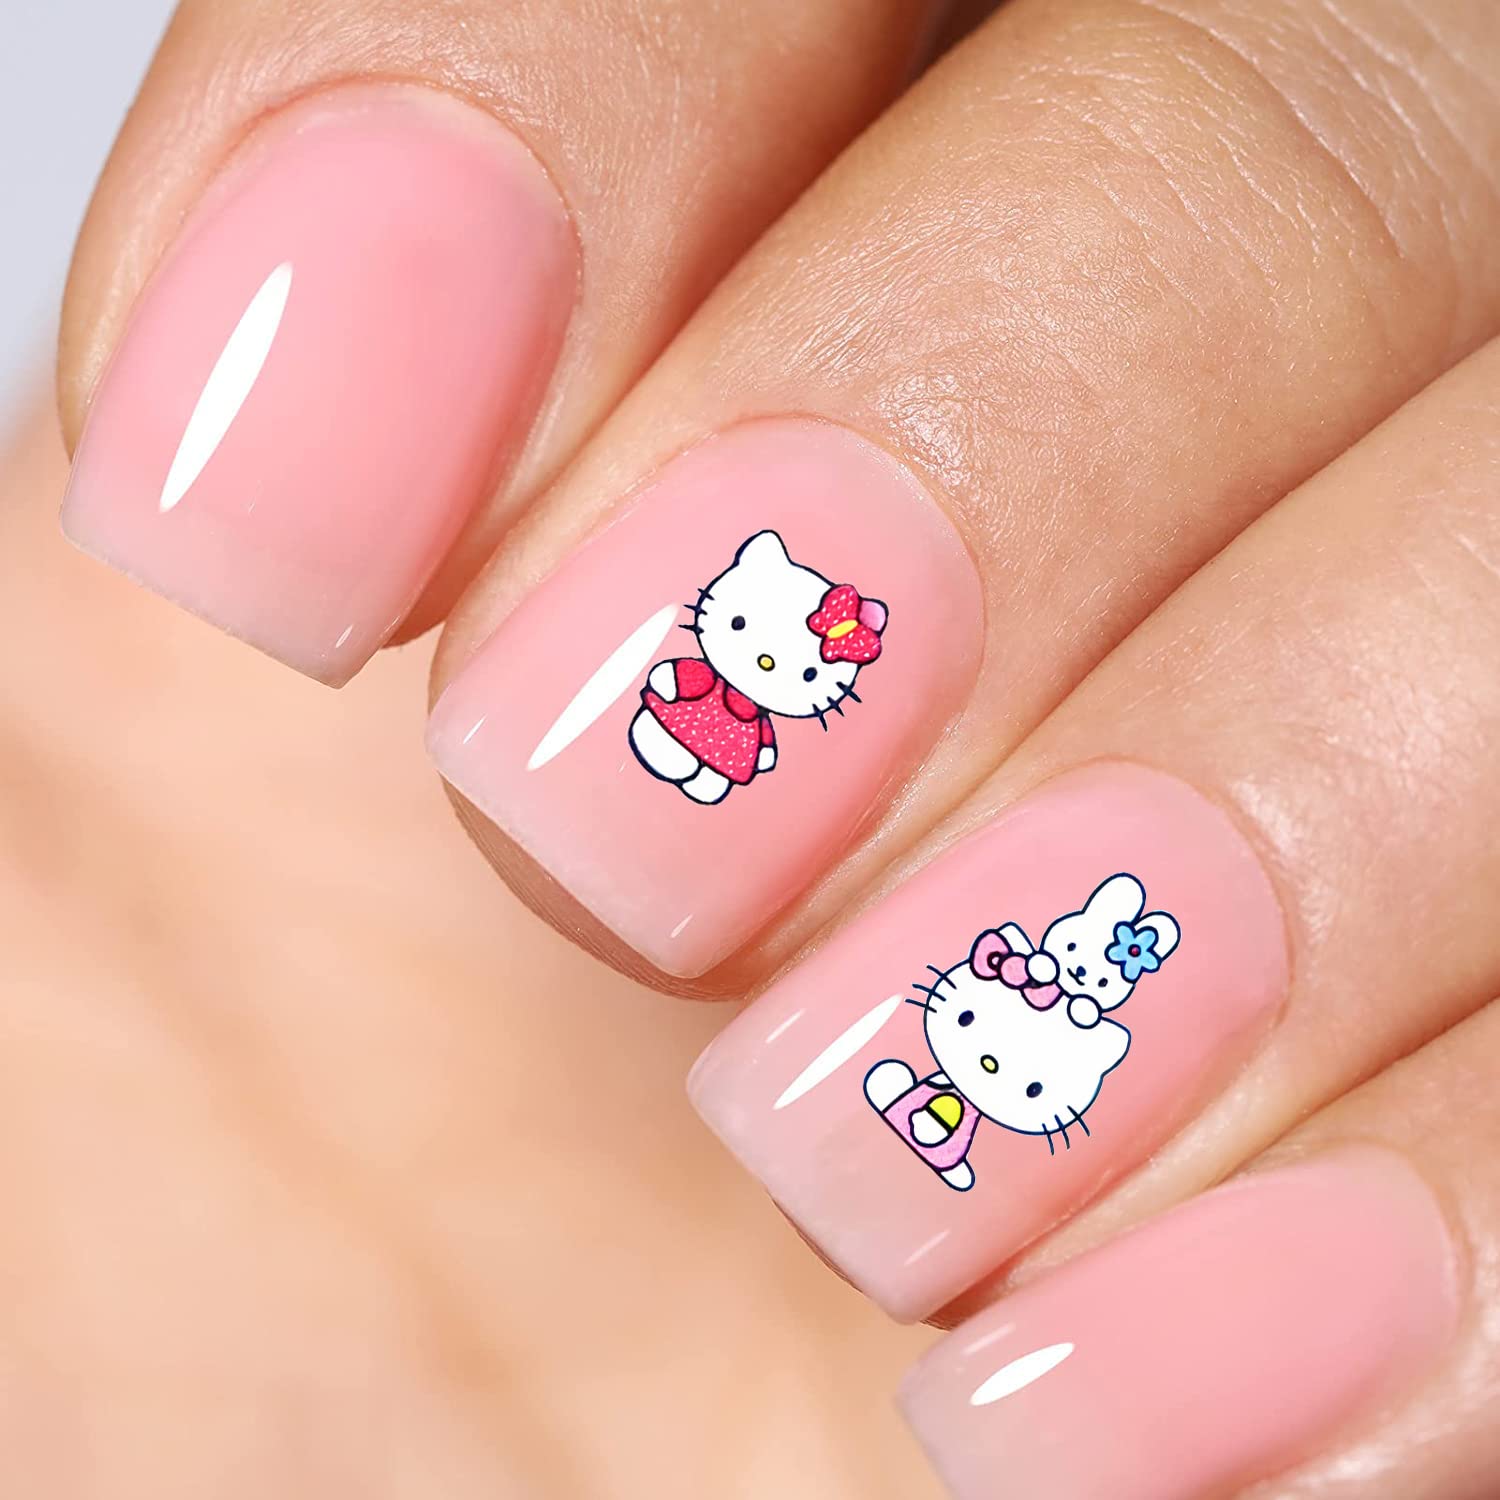 Tem móng tay Hello Kitty: Yêu thích Hello Kitty? Với tem móng tay Hello Kitty, bạn hoàn toàn có thể sở hữu bộ móng tay đẹp và độc đáo. Hãy để khả năng sáng tạo của bạn thăng hoa và biến những đôi tay thành những tác phẩm nghệ thuật đầy sắc màu.